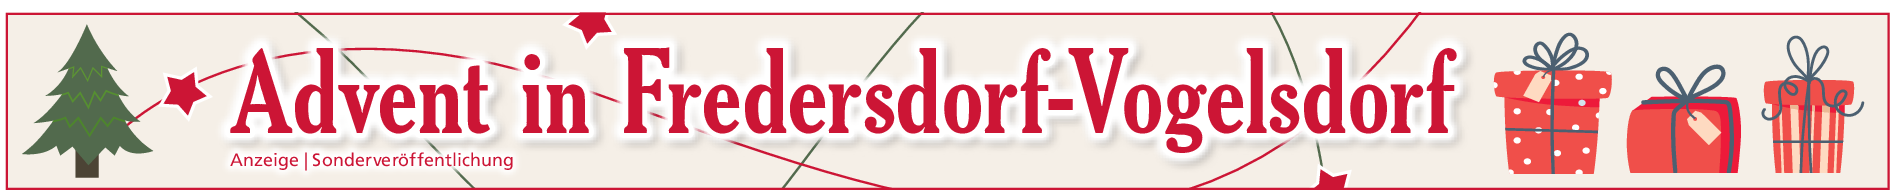 Fredersdorf-Vogelsdorf: Auftakt in die Adventszeit